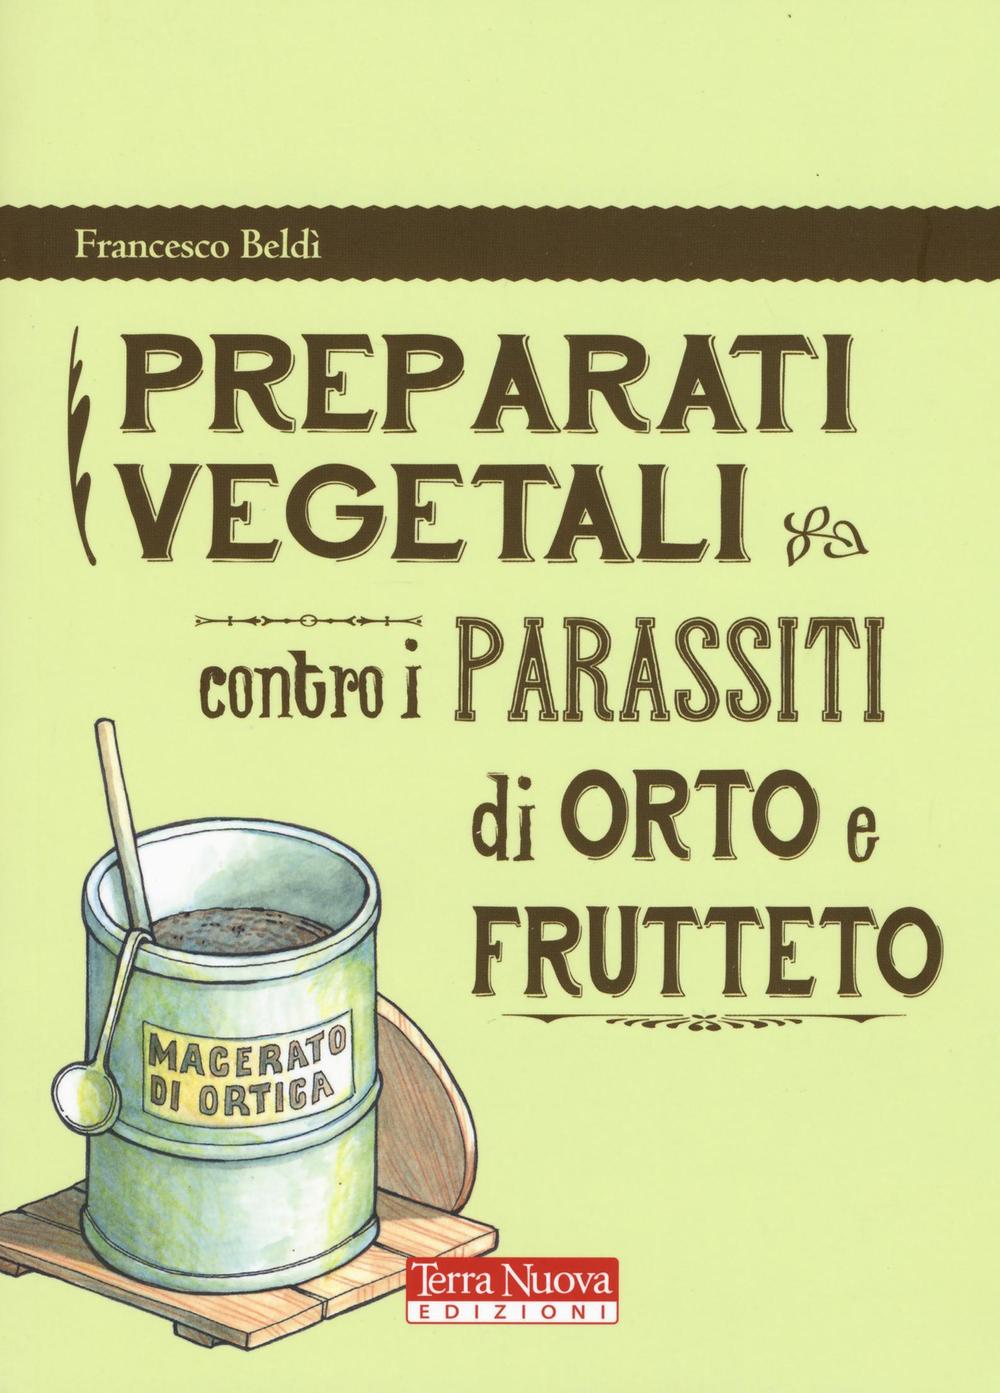 Kniha Preparati vegetali contro i parassiti di orto e frutteto Francesco Beldì